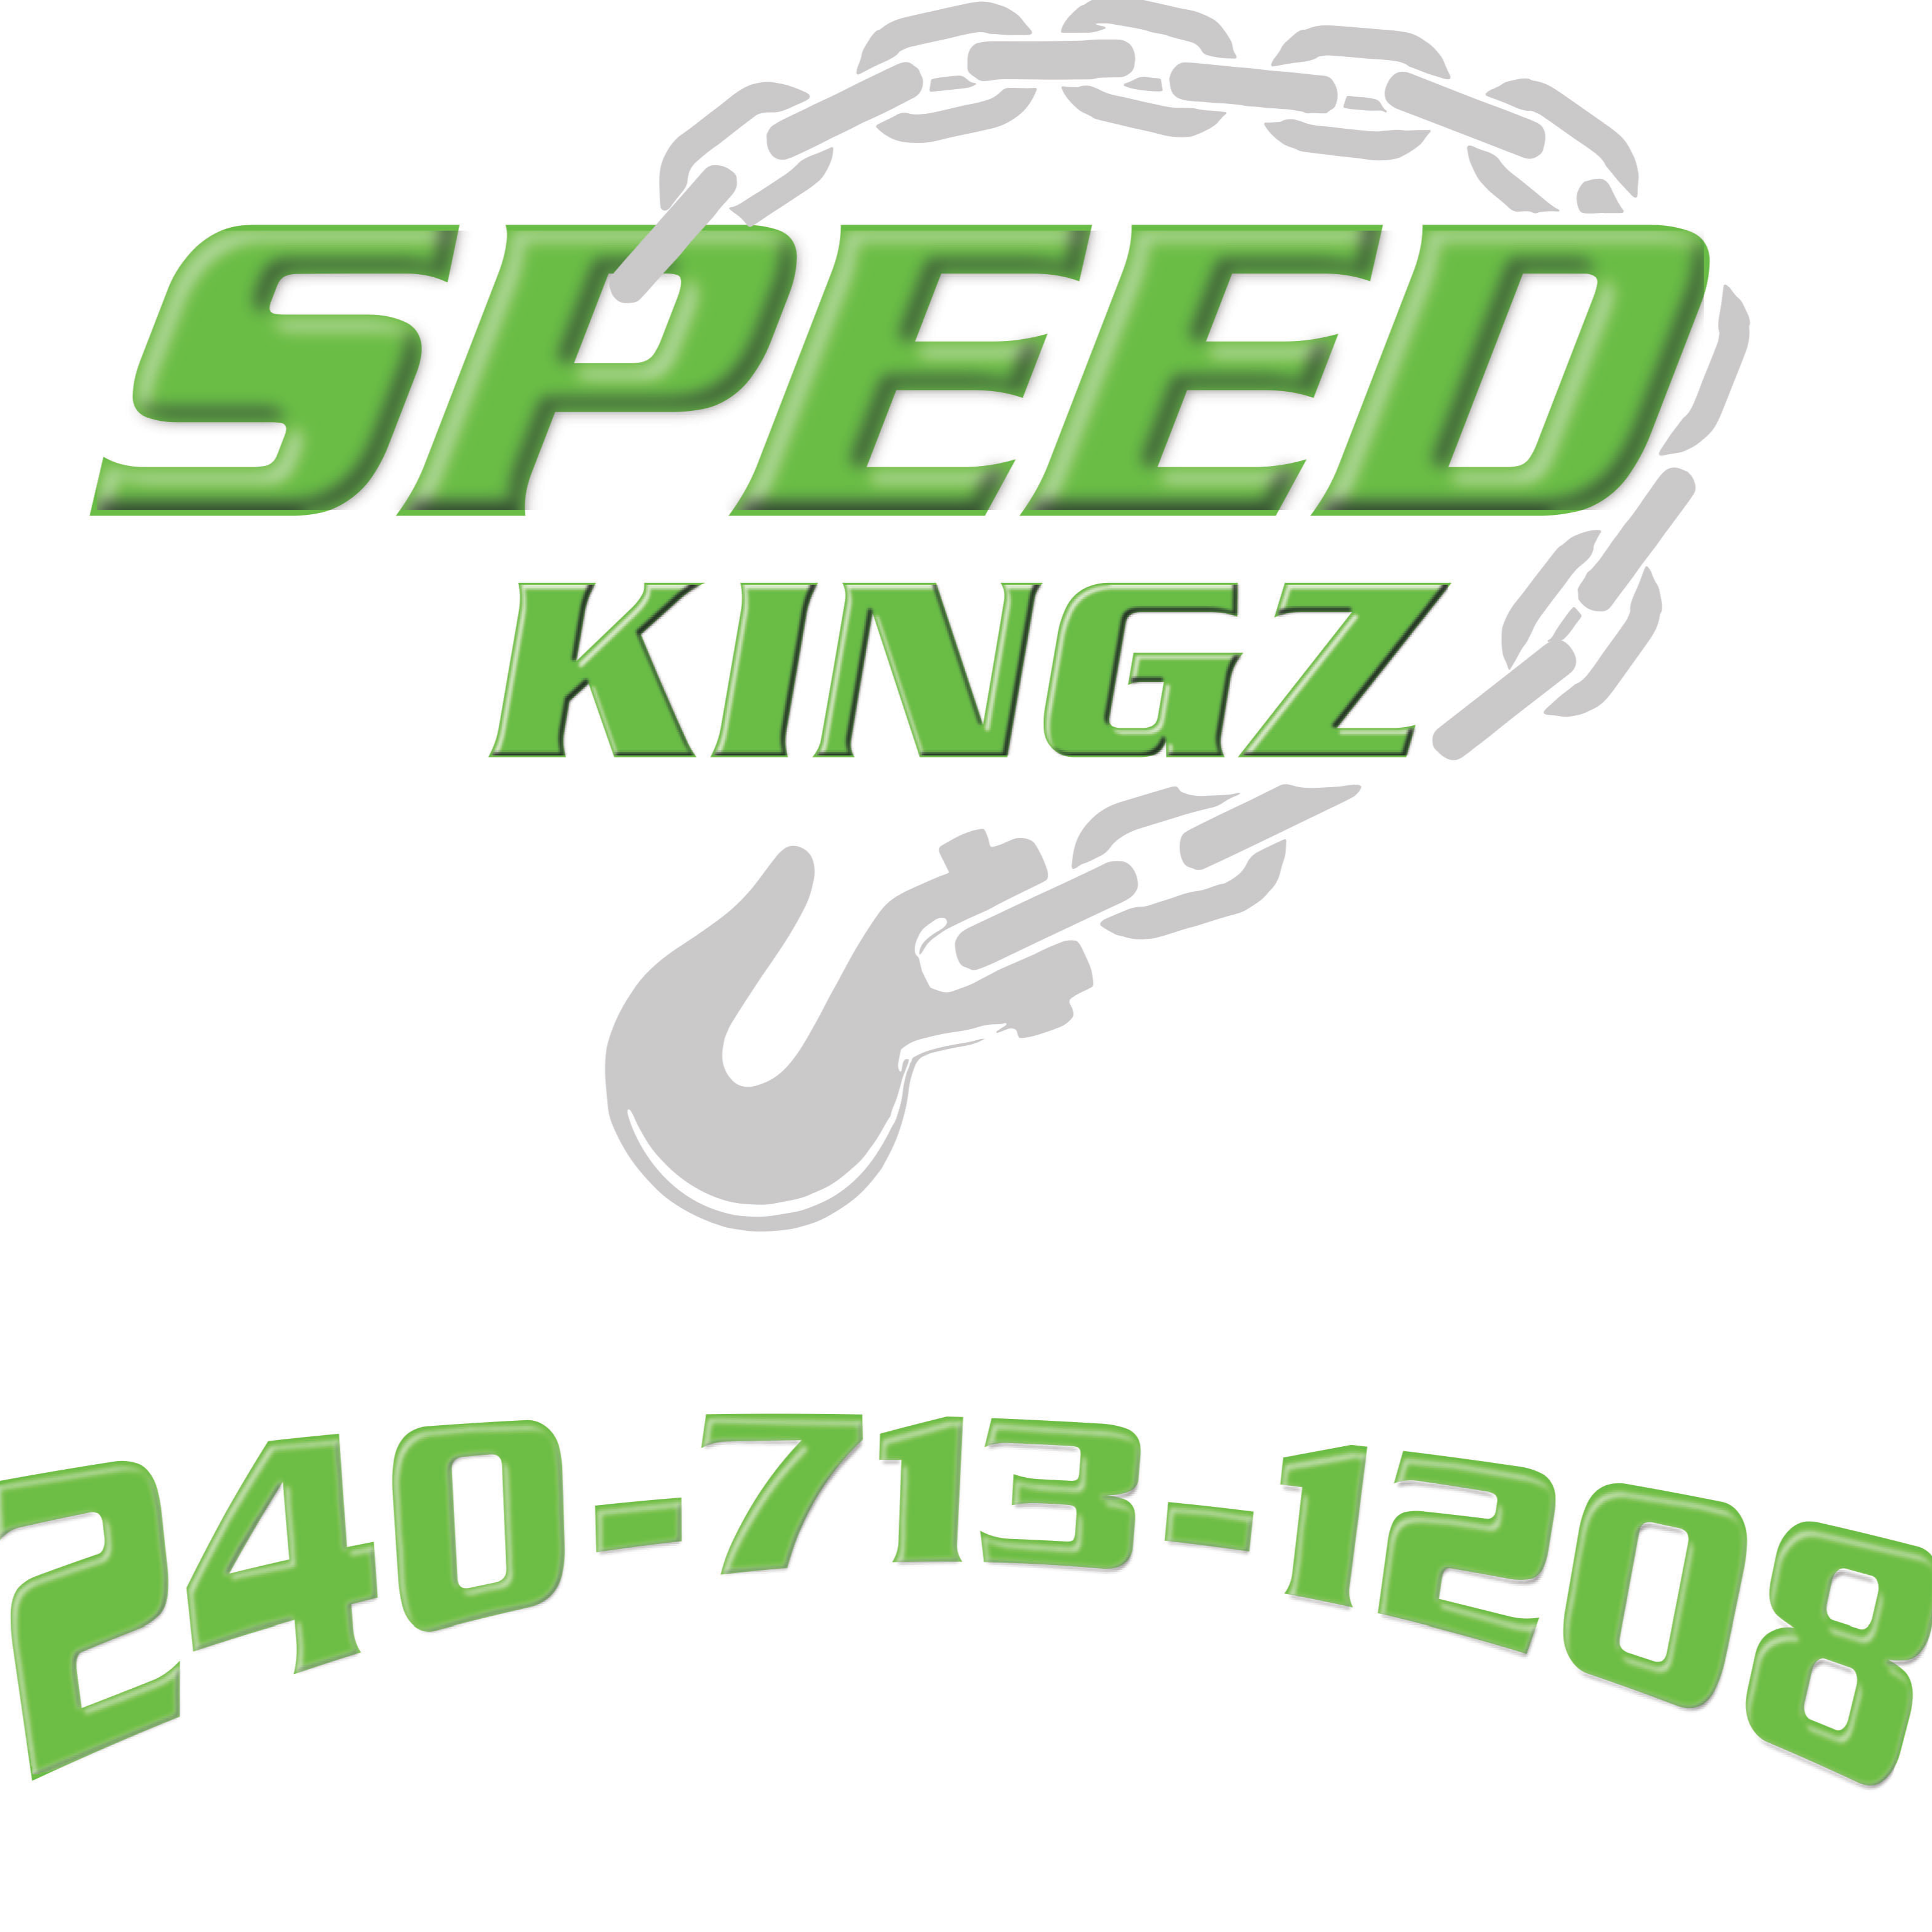 SpeedKingz Towing logo